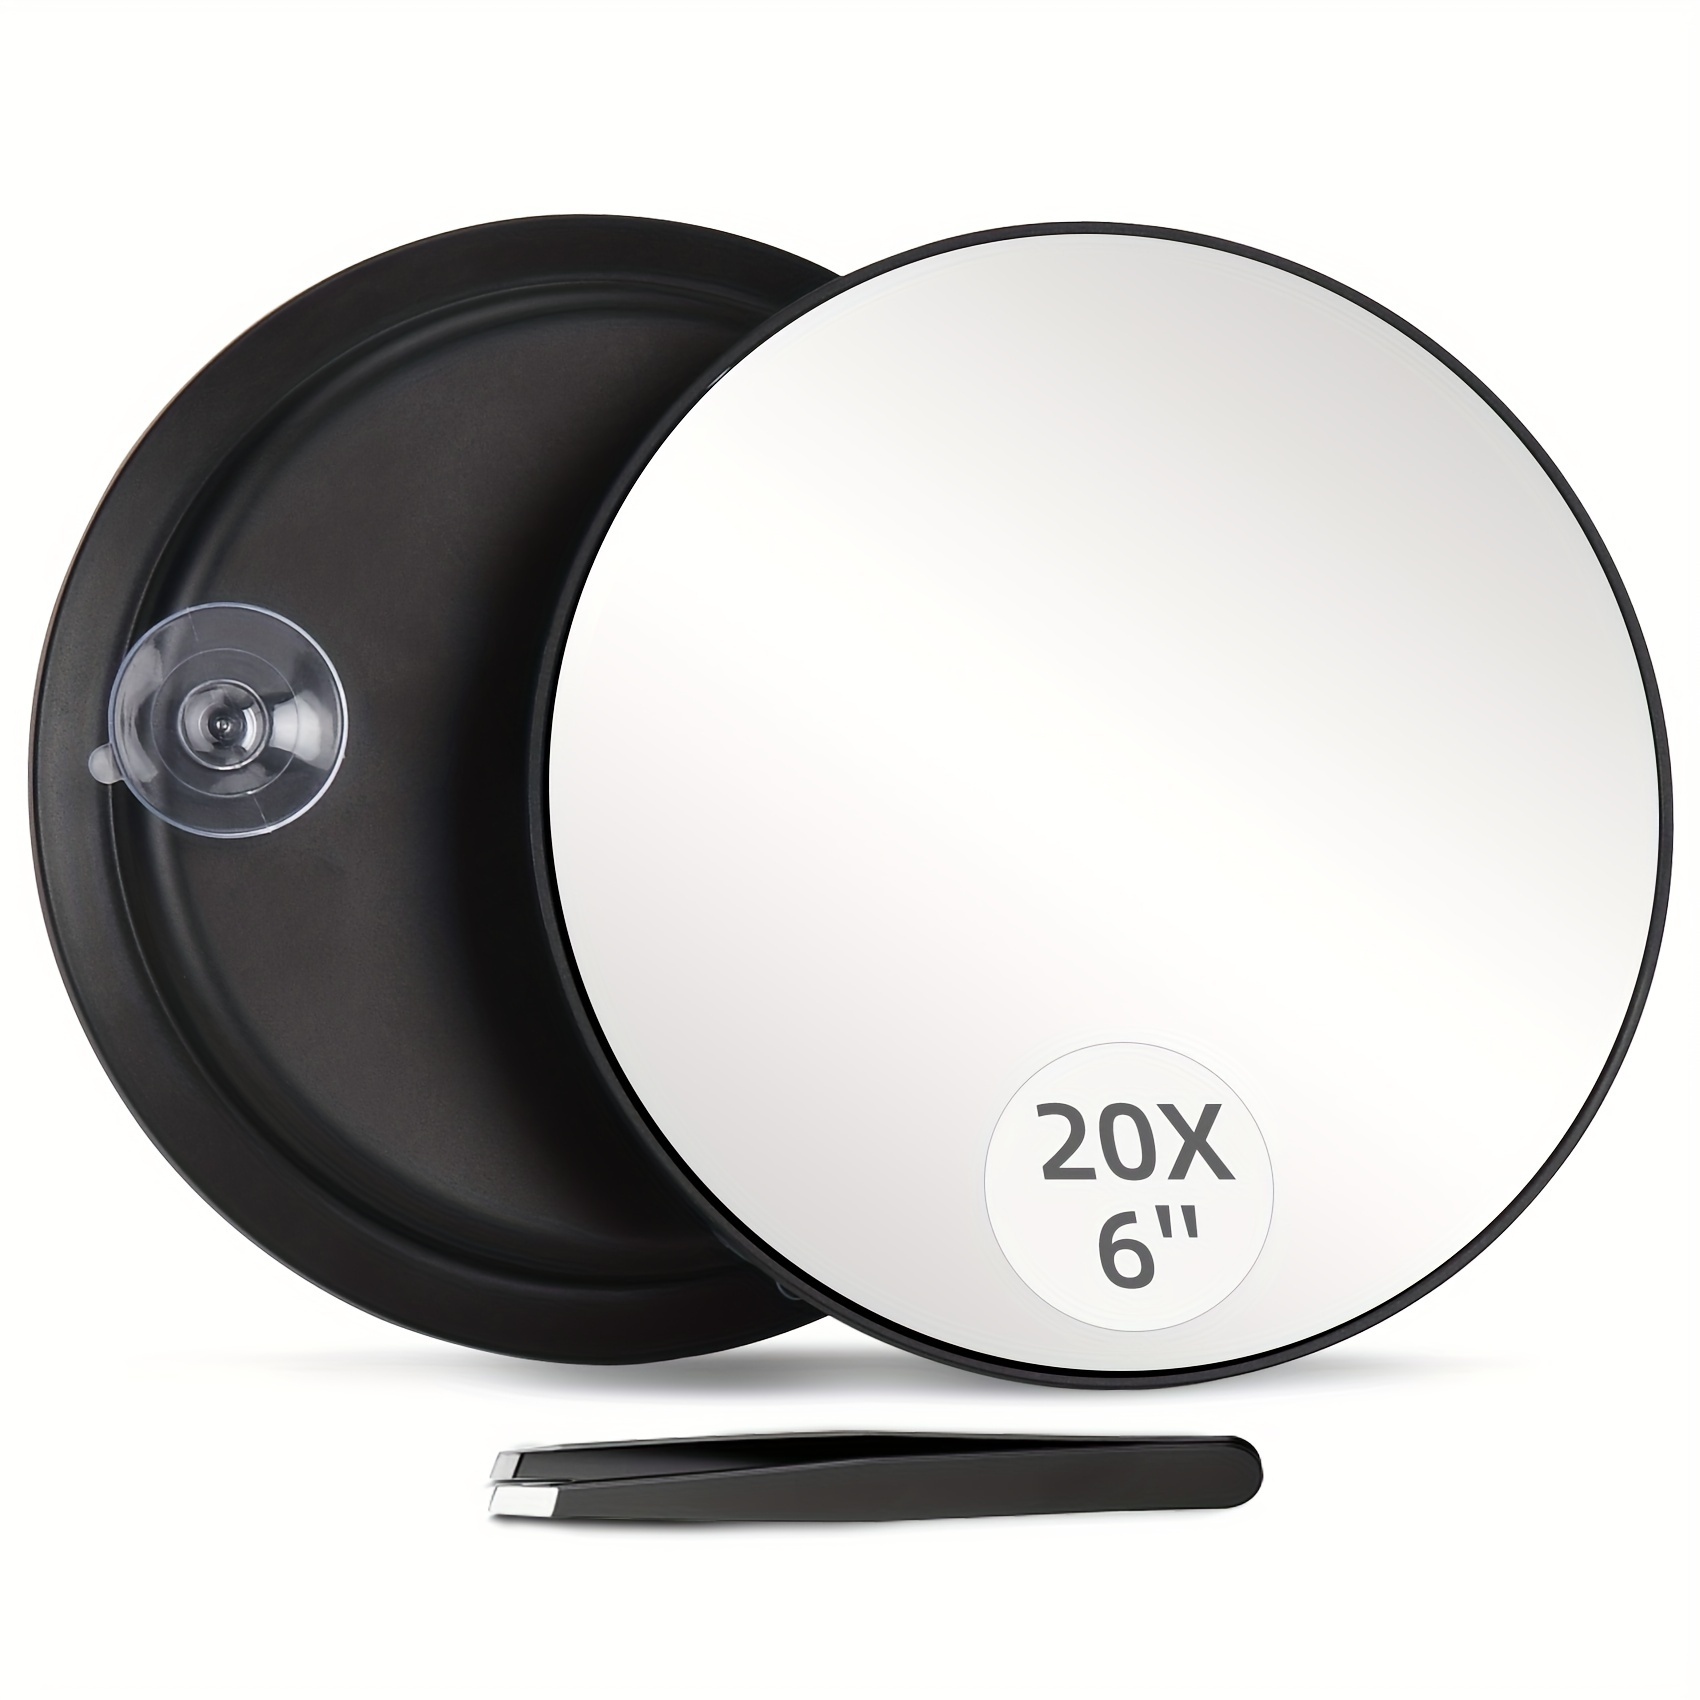 Espejo de Aumento 20X con ventosas, 15.2cm,Uso para aplicación de  Maquillaje, Pinzas y eliminación de Puntos Negros/imperfecciones, :  : Belleza